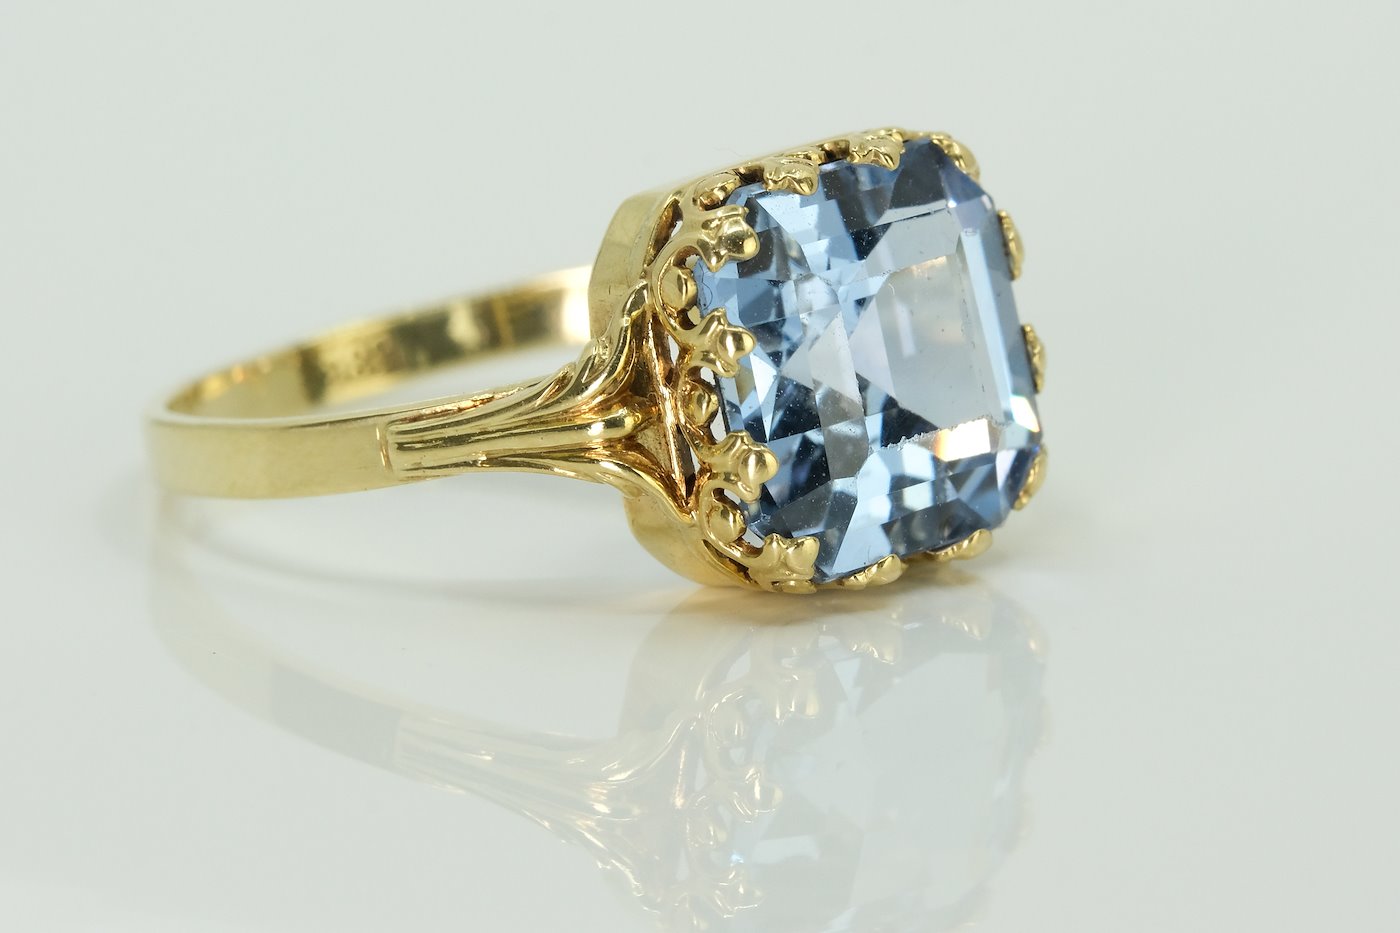 .. - Prsten s akvamarínem, zlato 585/1000, značeno platnou puncovní značkou Z-34 "lyra", hrubá hmotnost 2,57 g